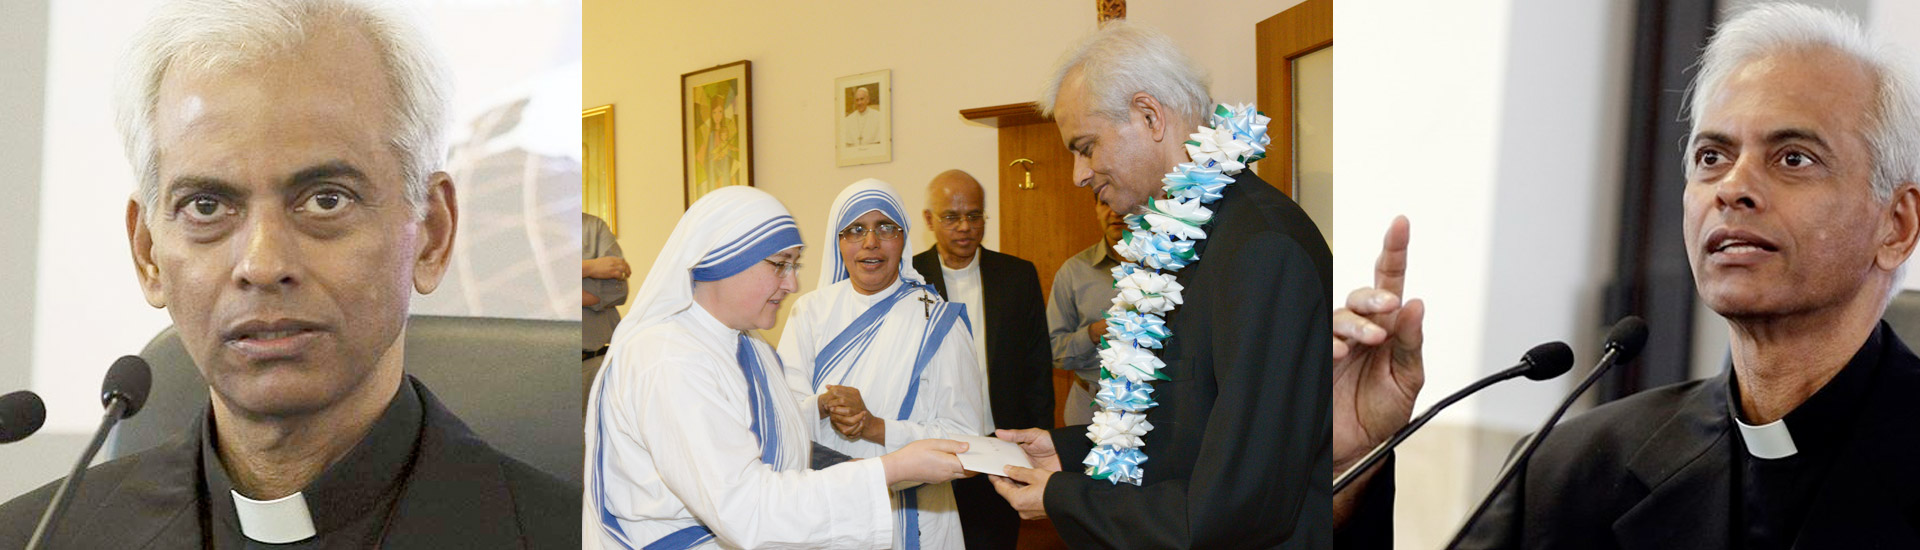 Premio Madre Teresa 2017